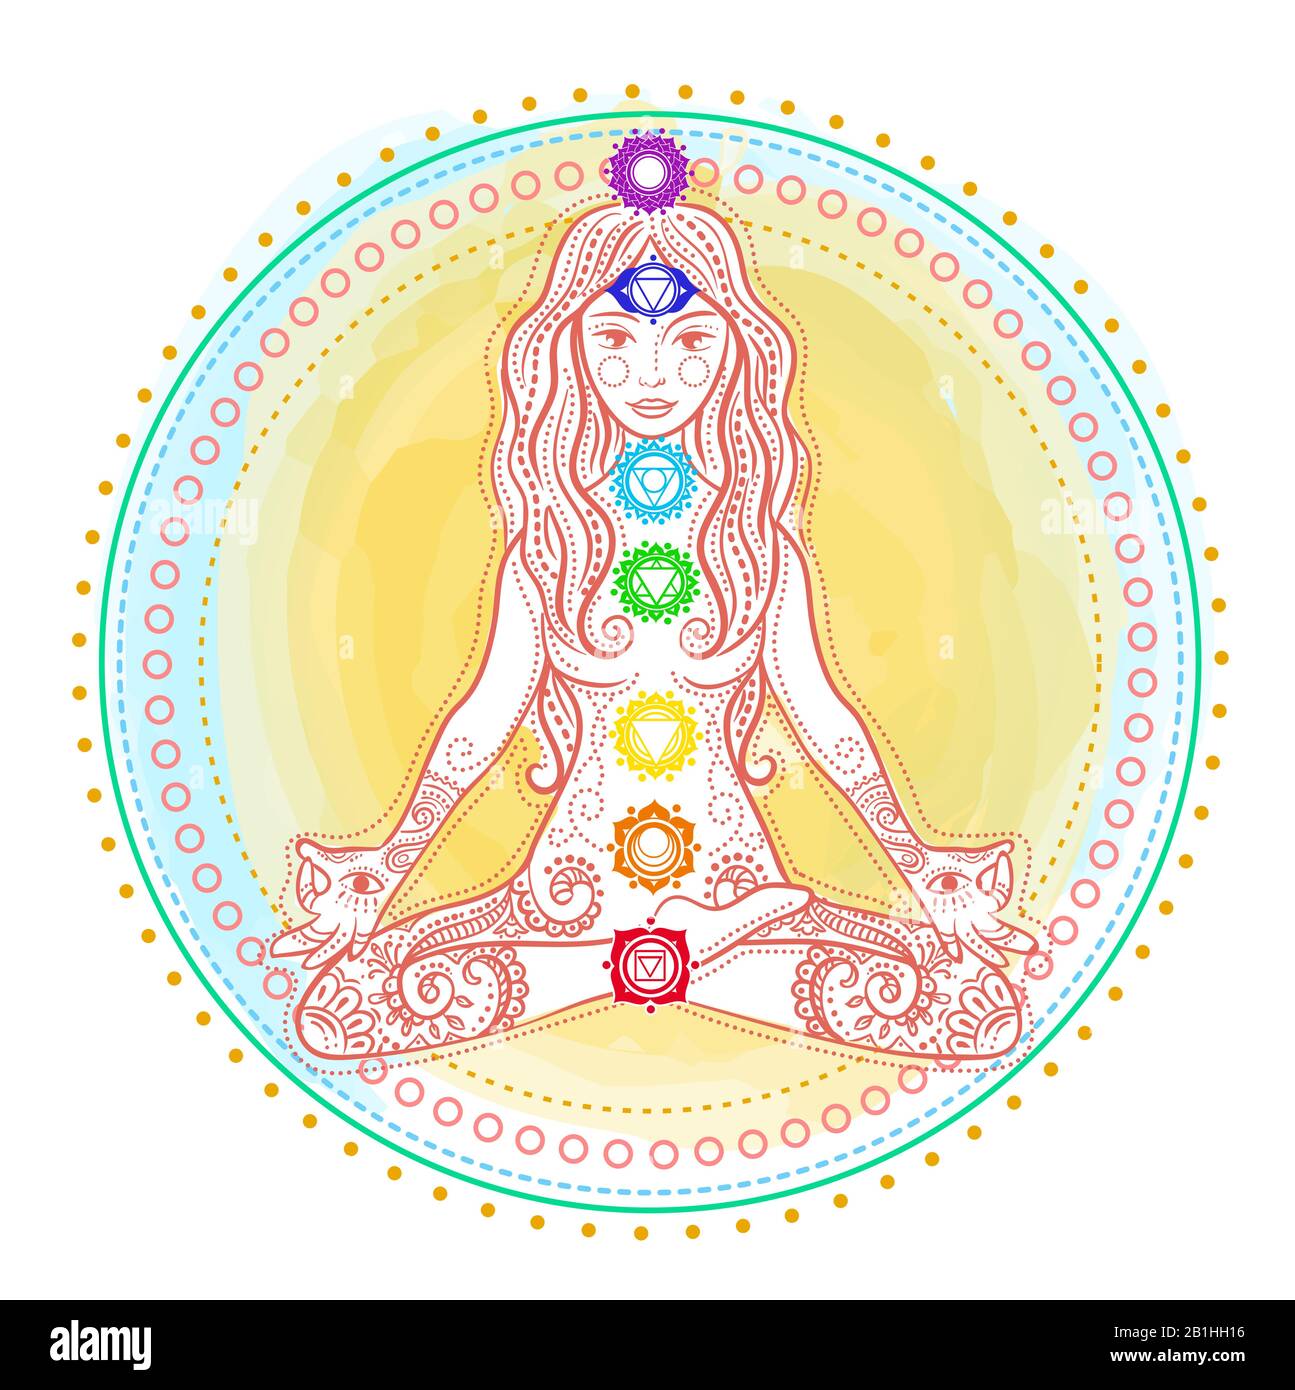 Konzept eines gesunden Lebensstils in Form einer Frau, die Yoga macht, in lotus-pose sitzt und Chakras auf ihr pickon. Icon-Mädchen aus indischem Kulturboho Stock Vektor